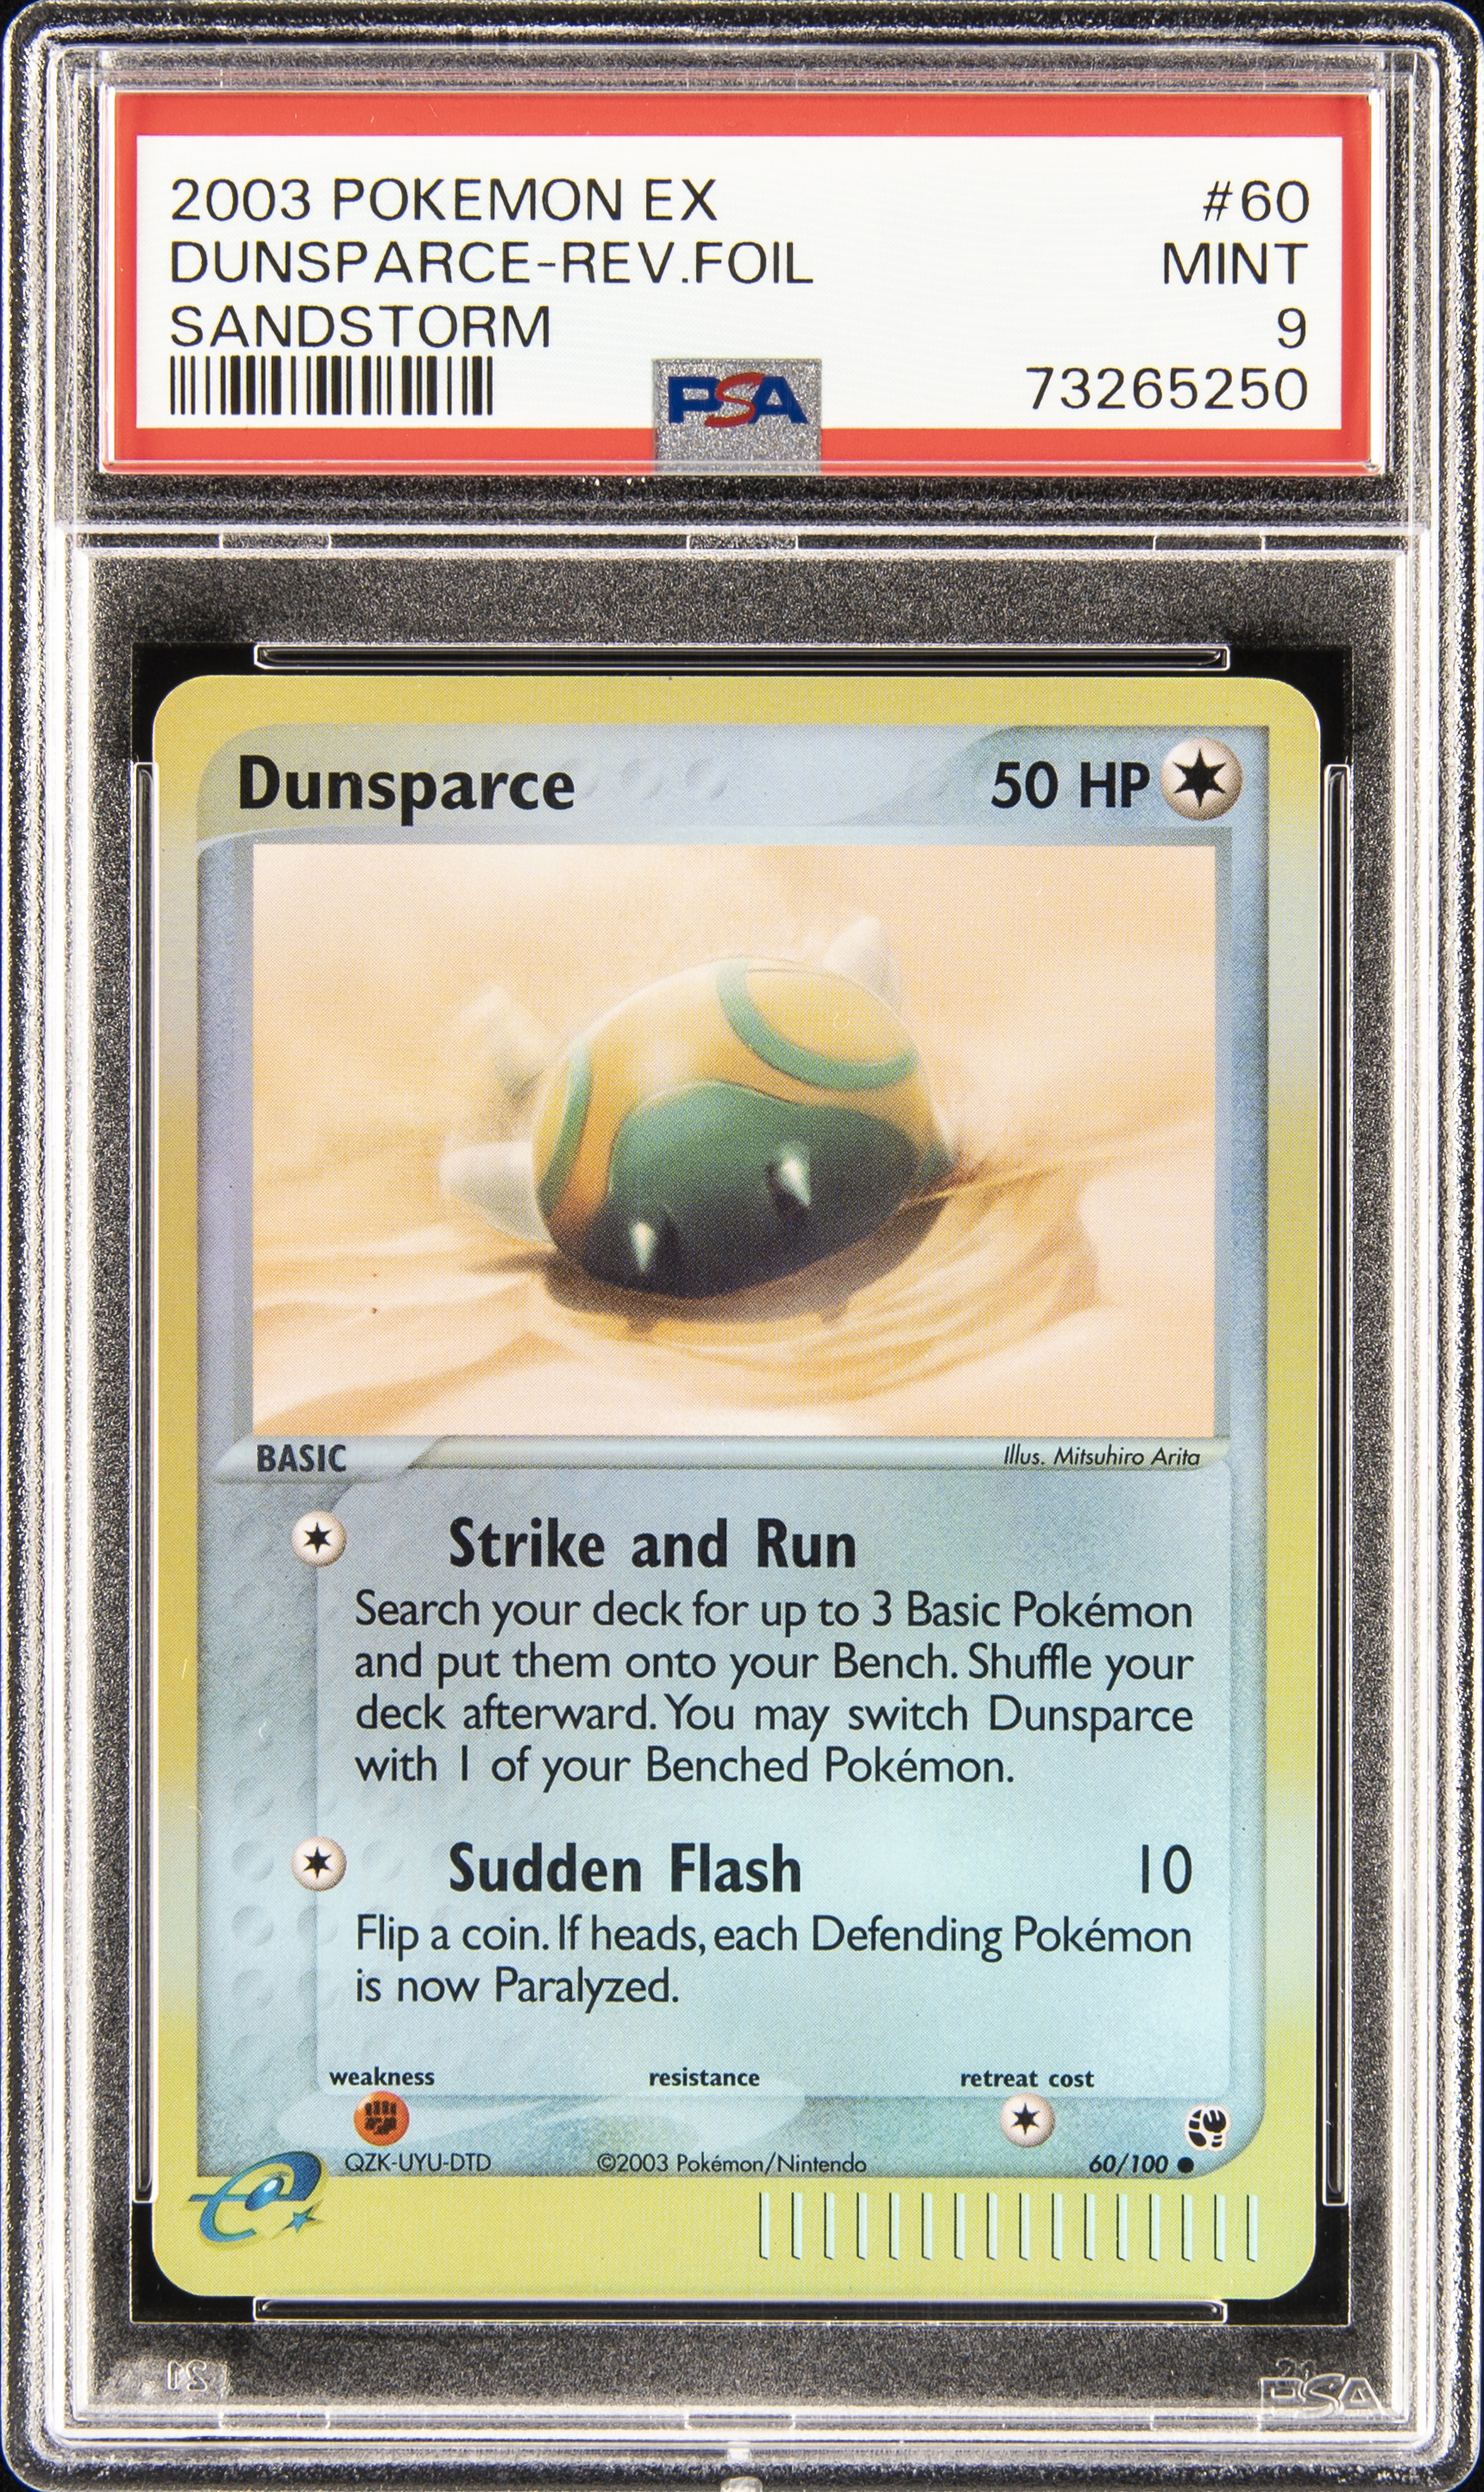 2003 Pokemon EX Sandstorm Reverse Foil #60 Dunsparce – PSA MINT 9